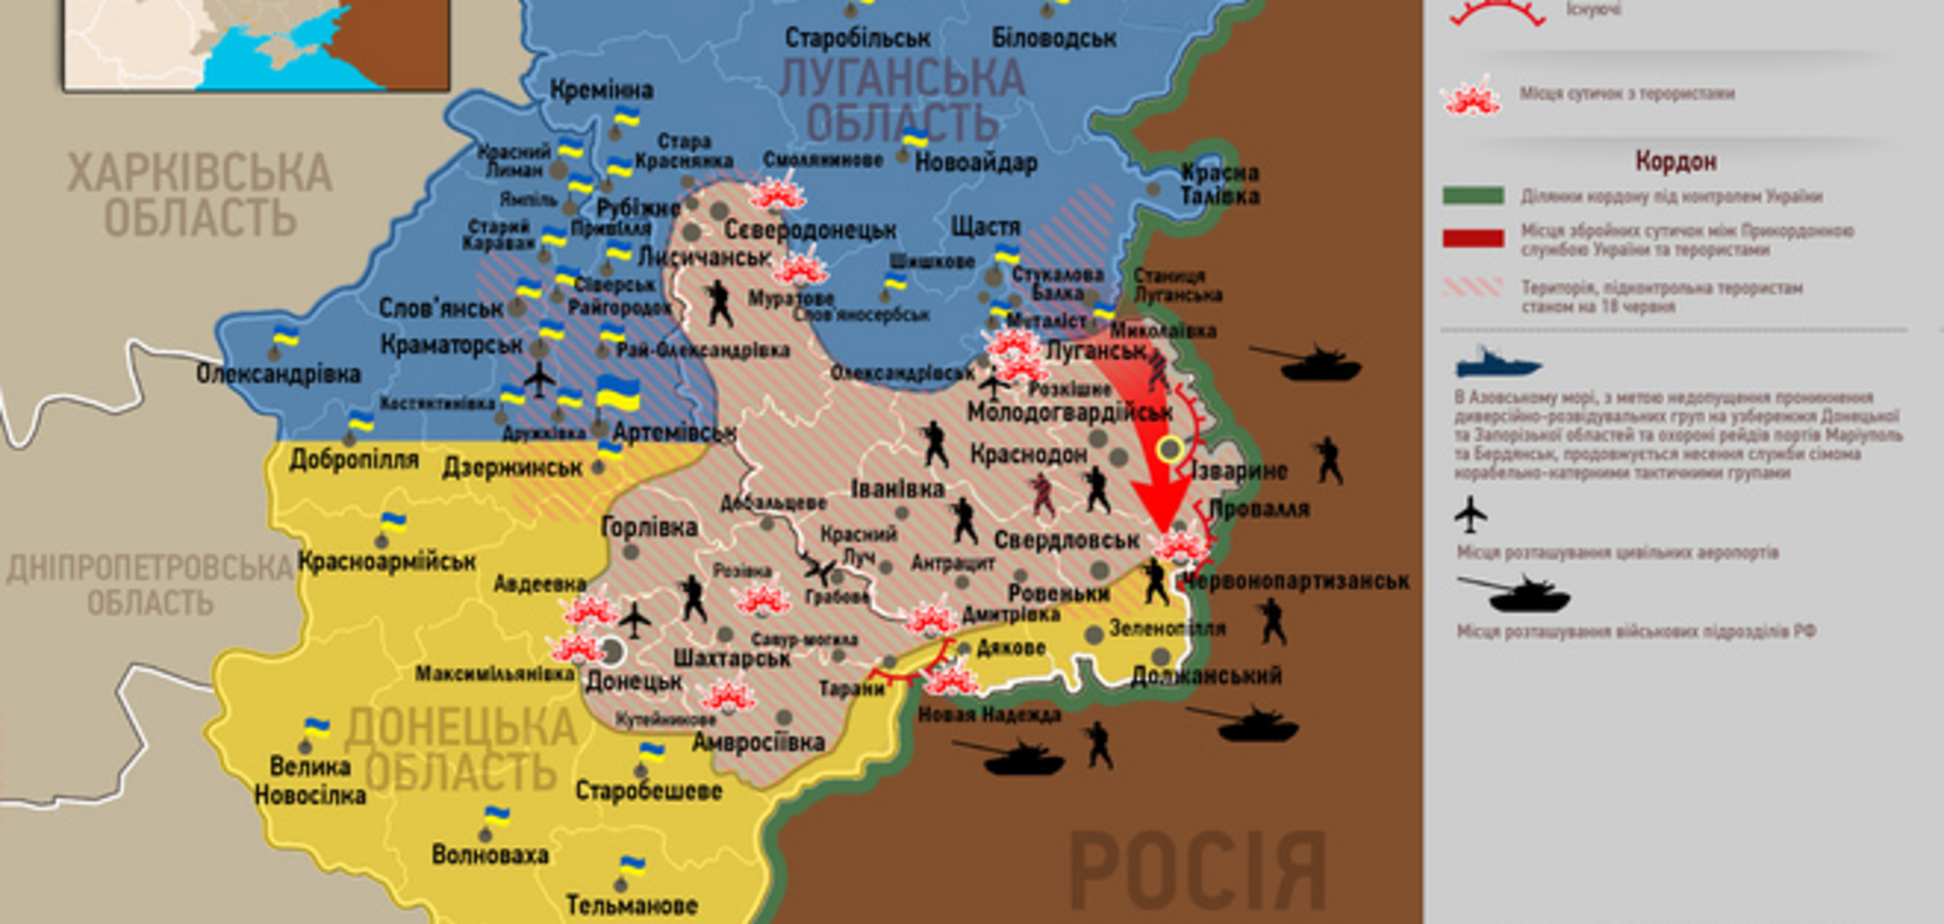 Опублікована актуальна карта боїв в зоні АТО - 18 липня 2014